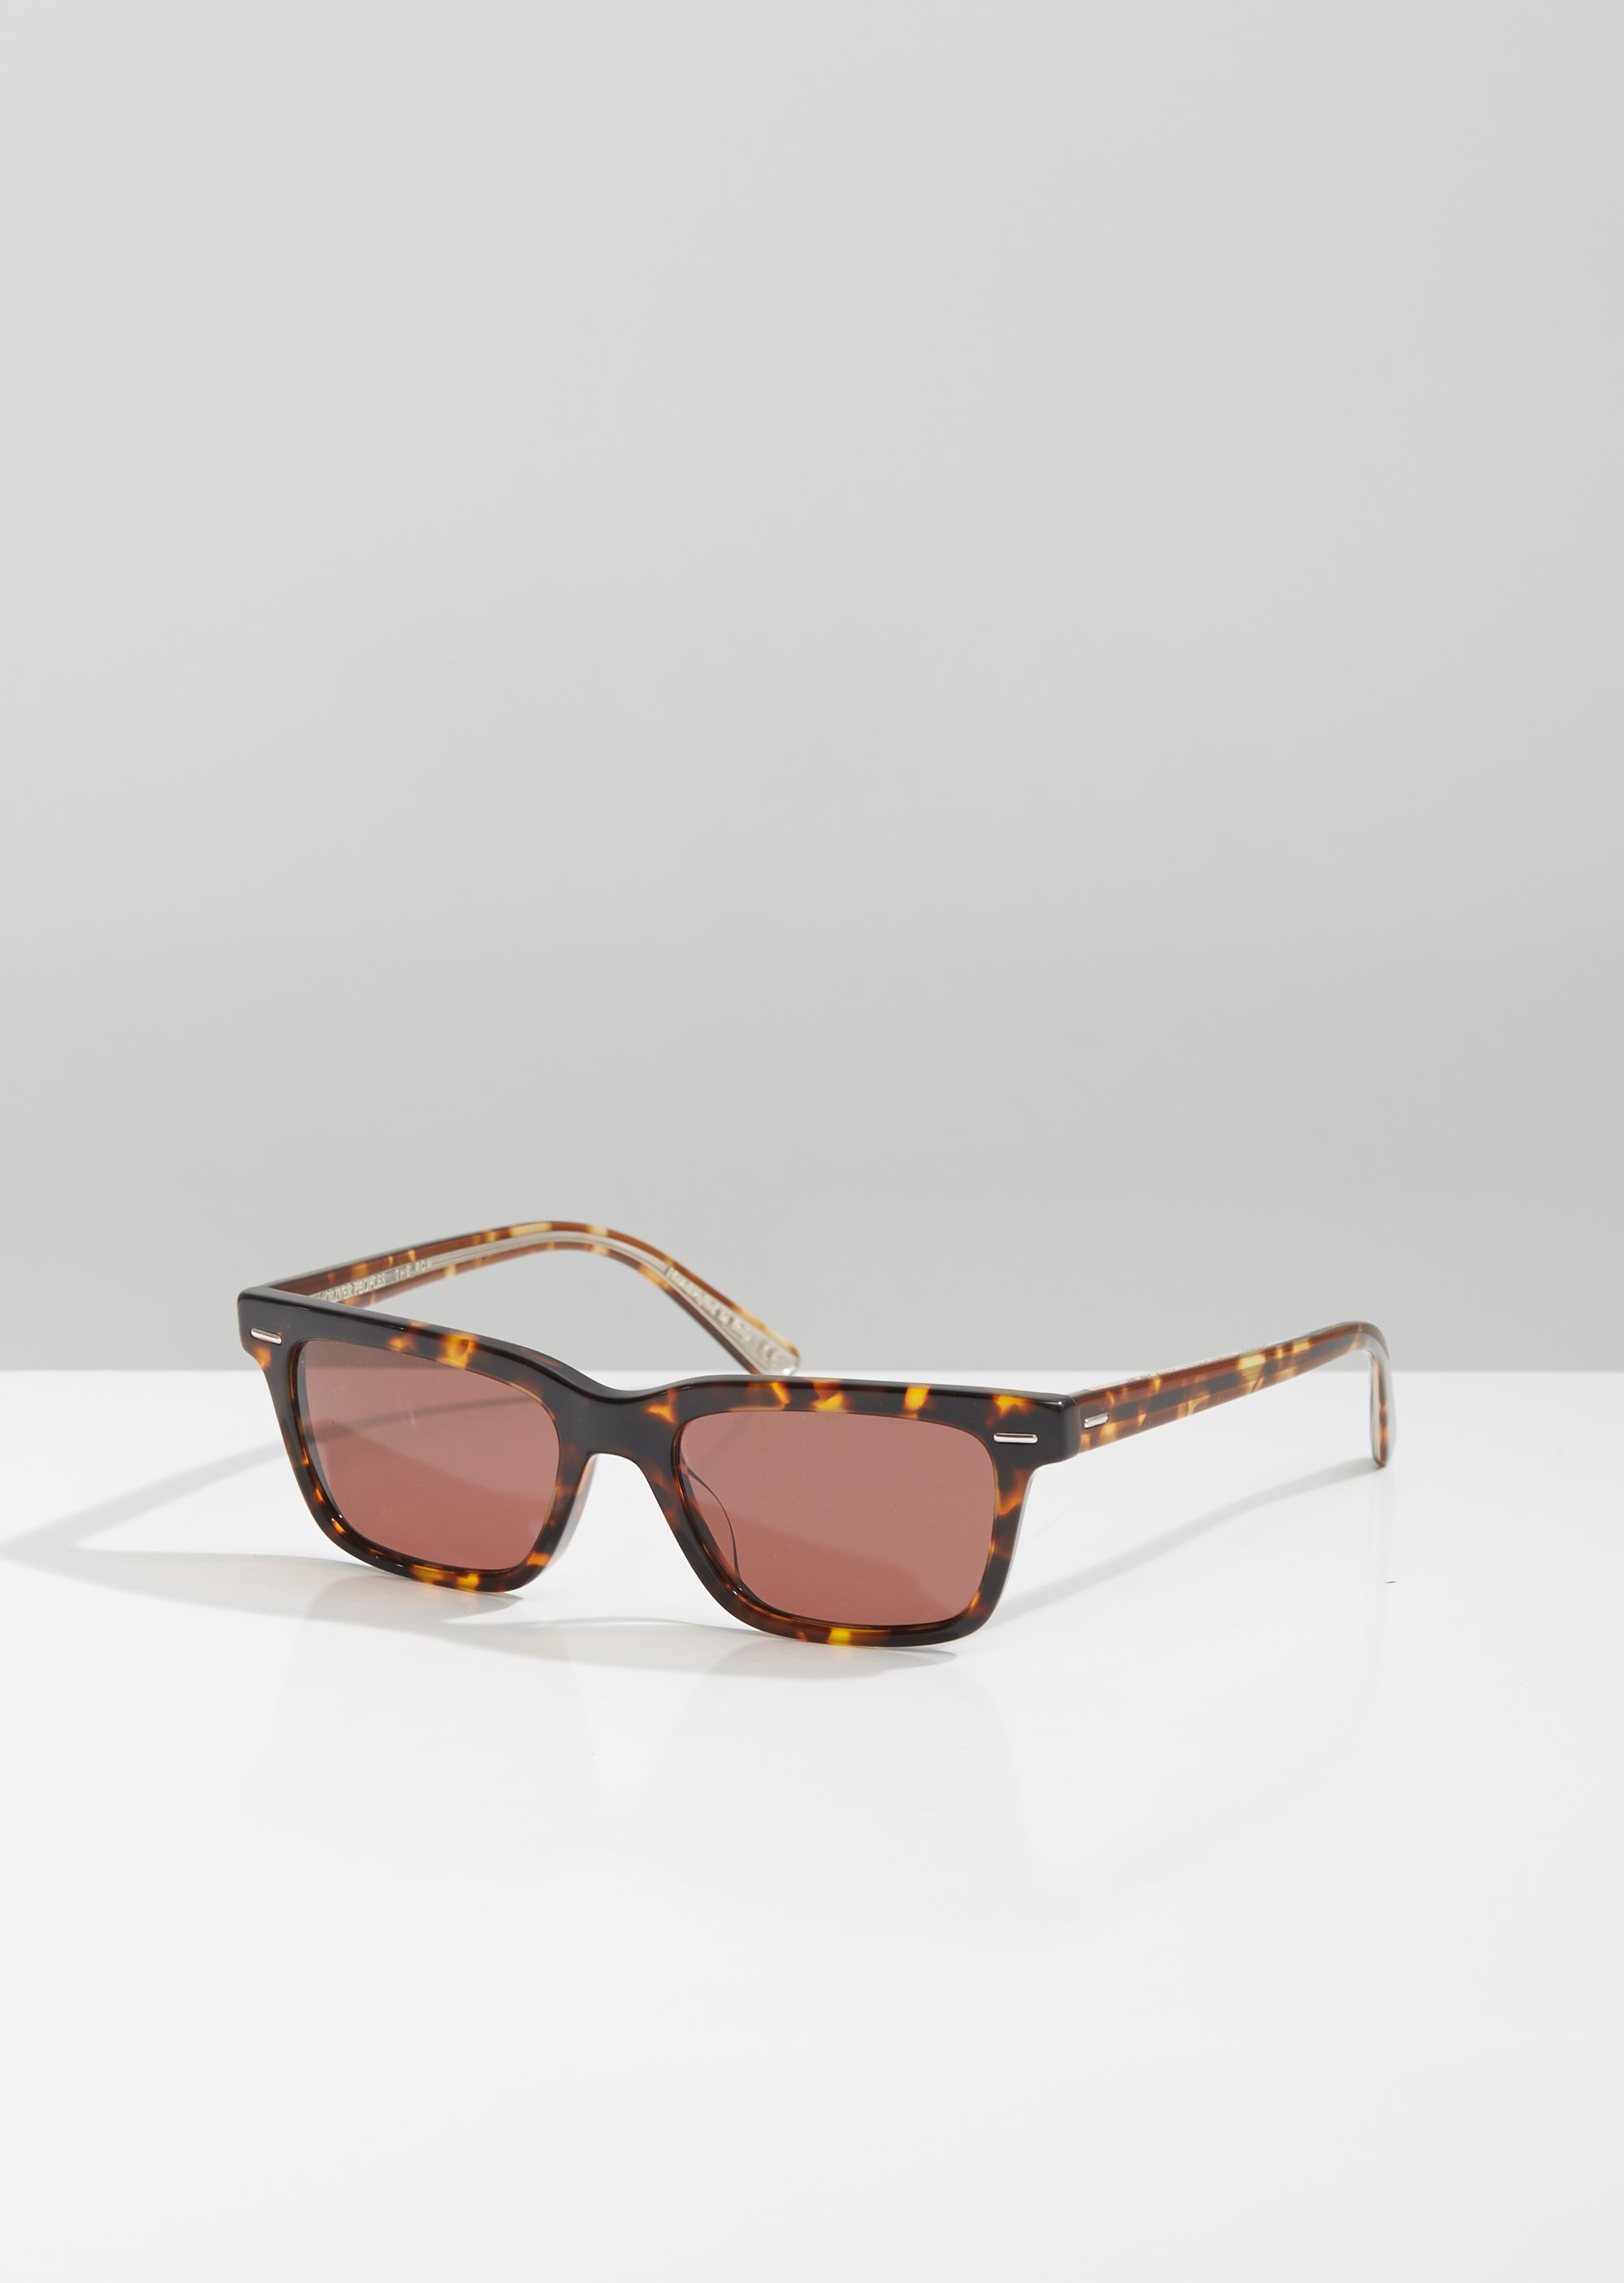 Bacc Sunglasses by Oliver Peoples The Row- La Garçonne